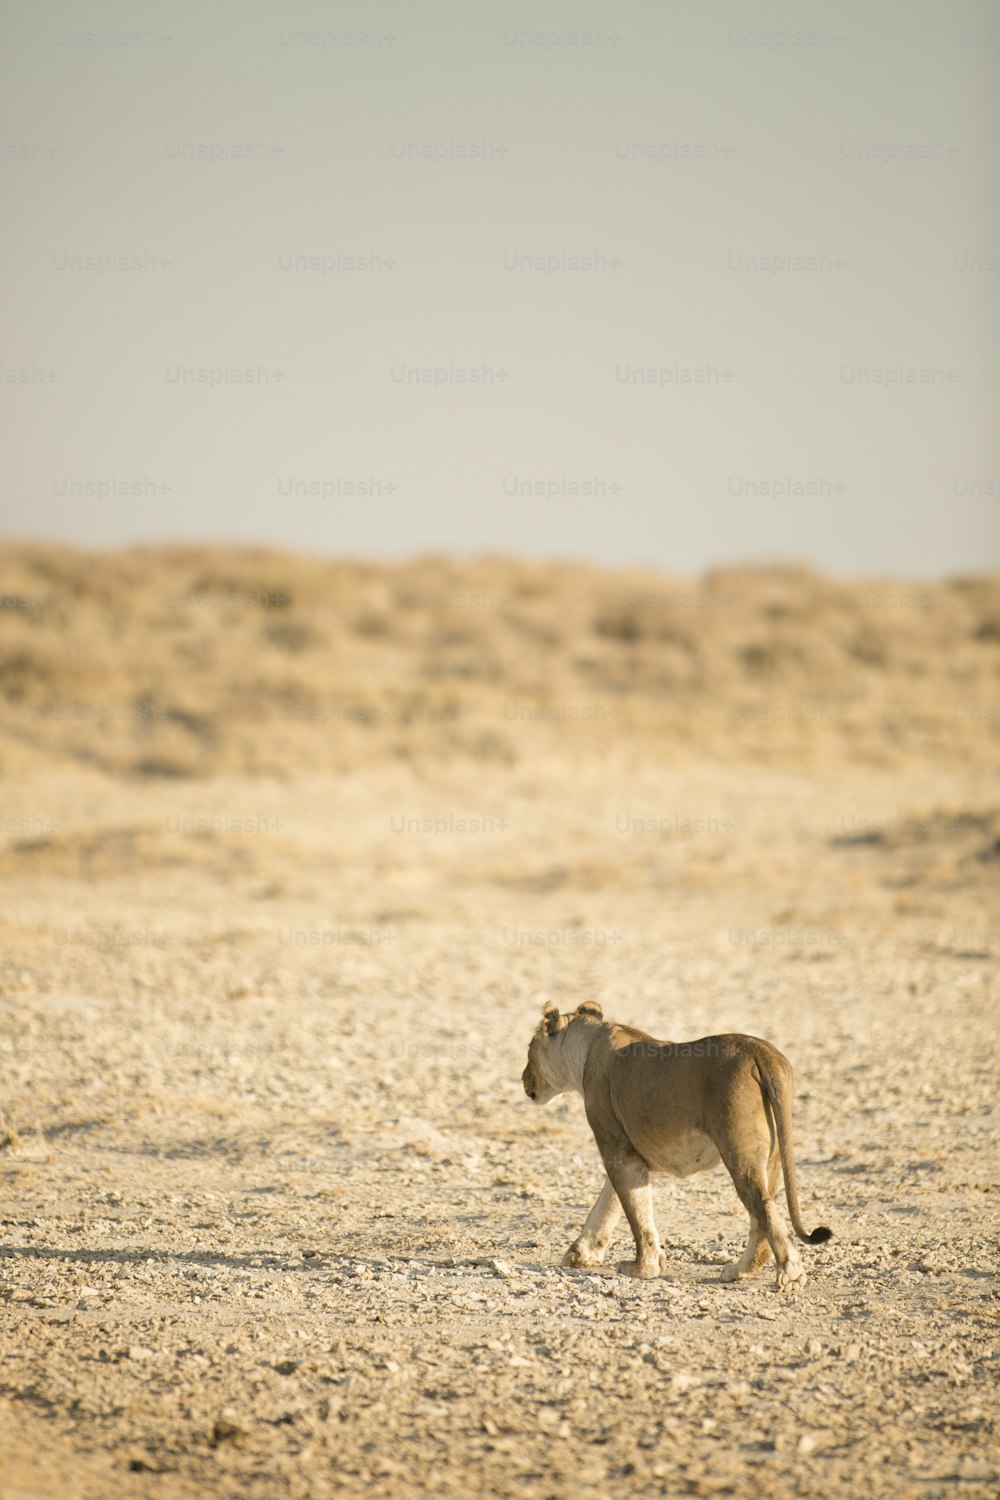 Lion marchant dans le parc national d’Etosha.